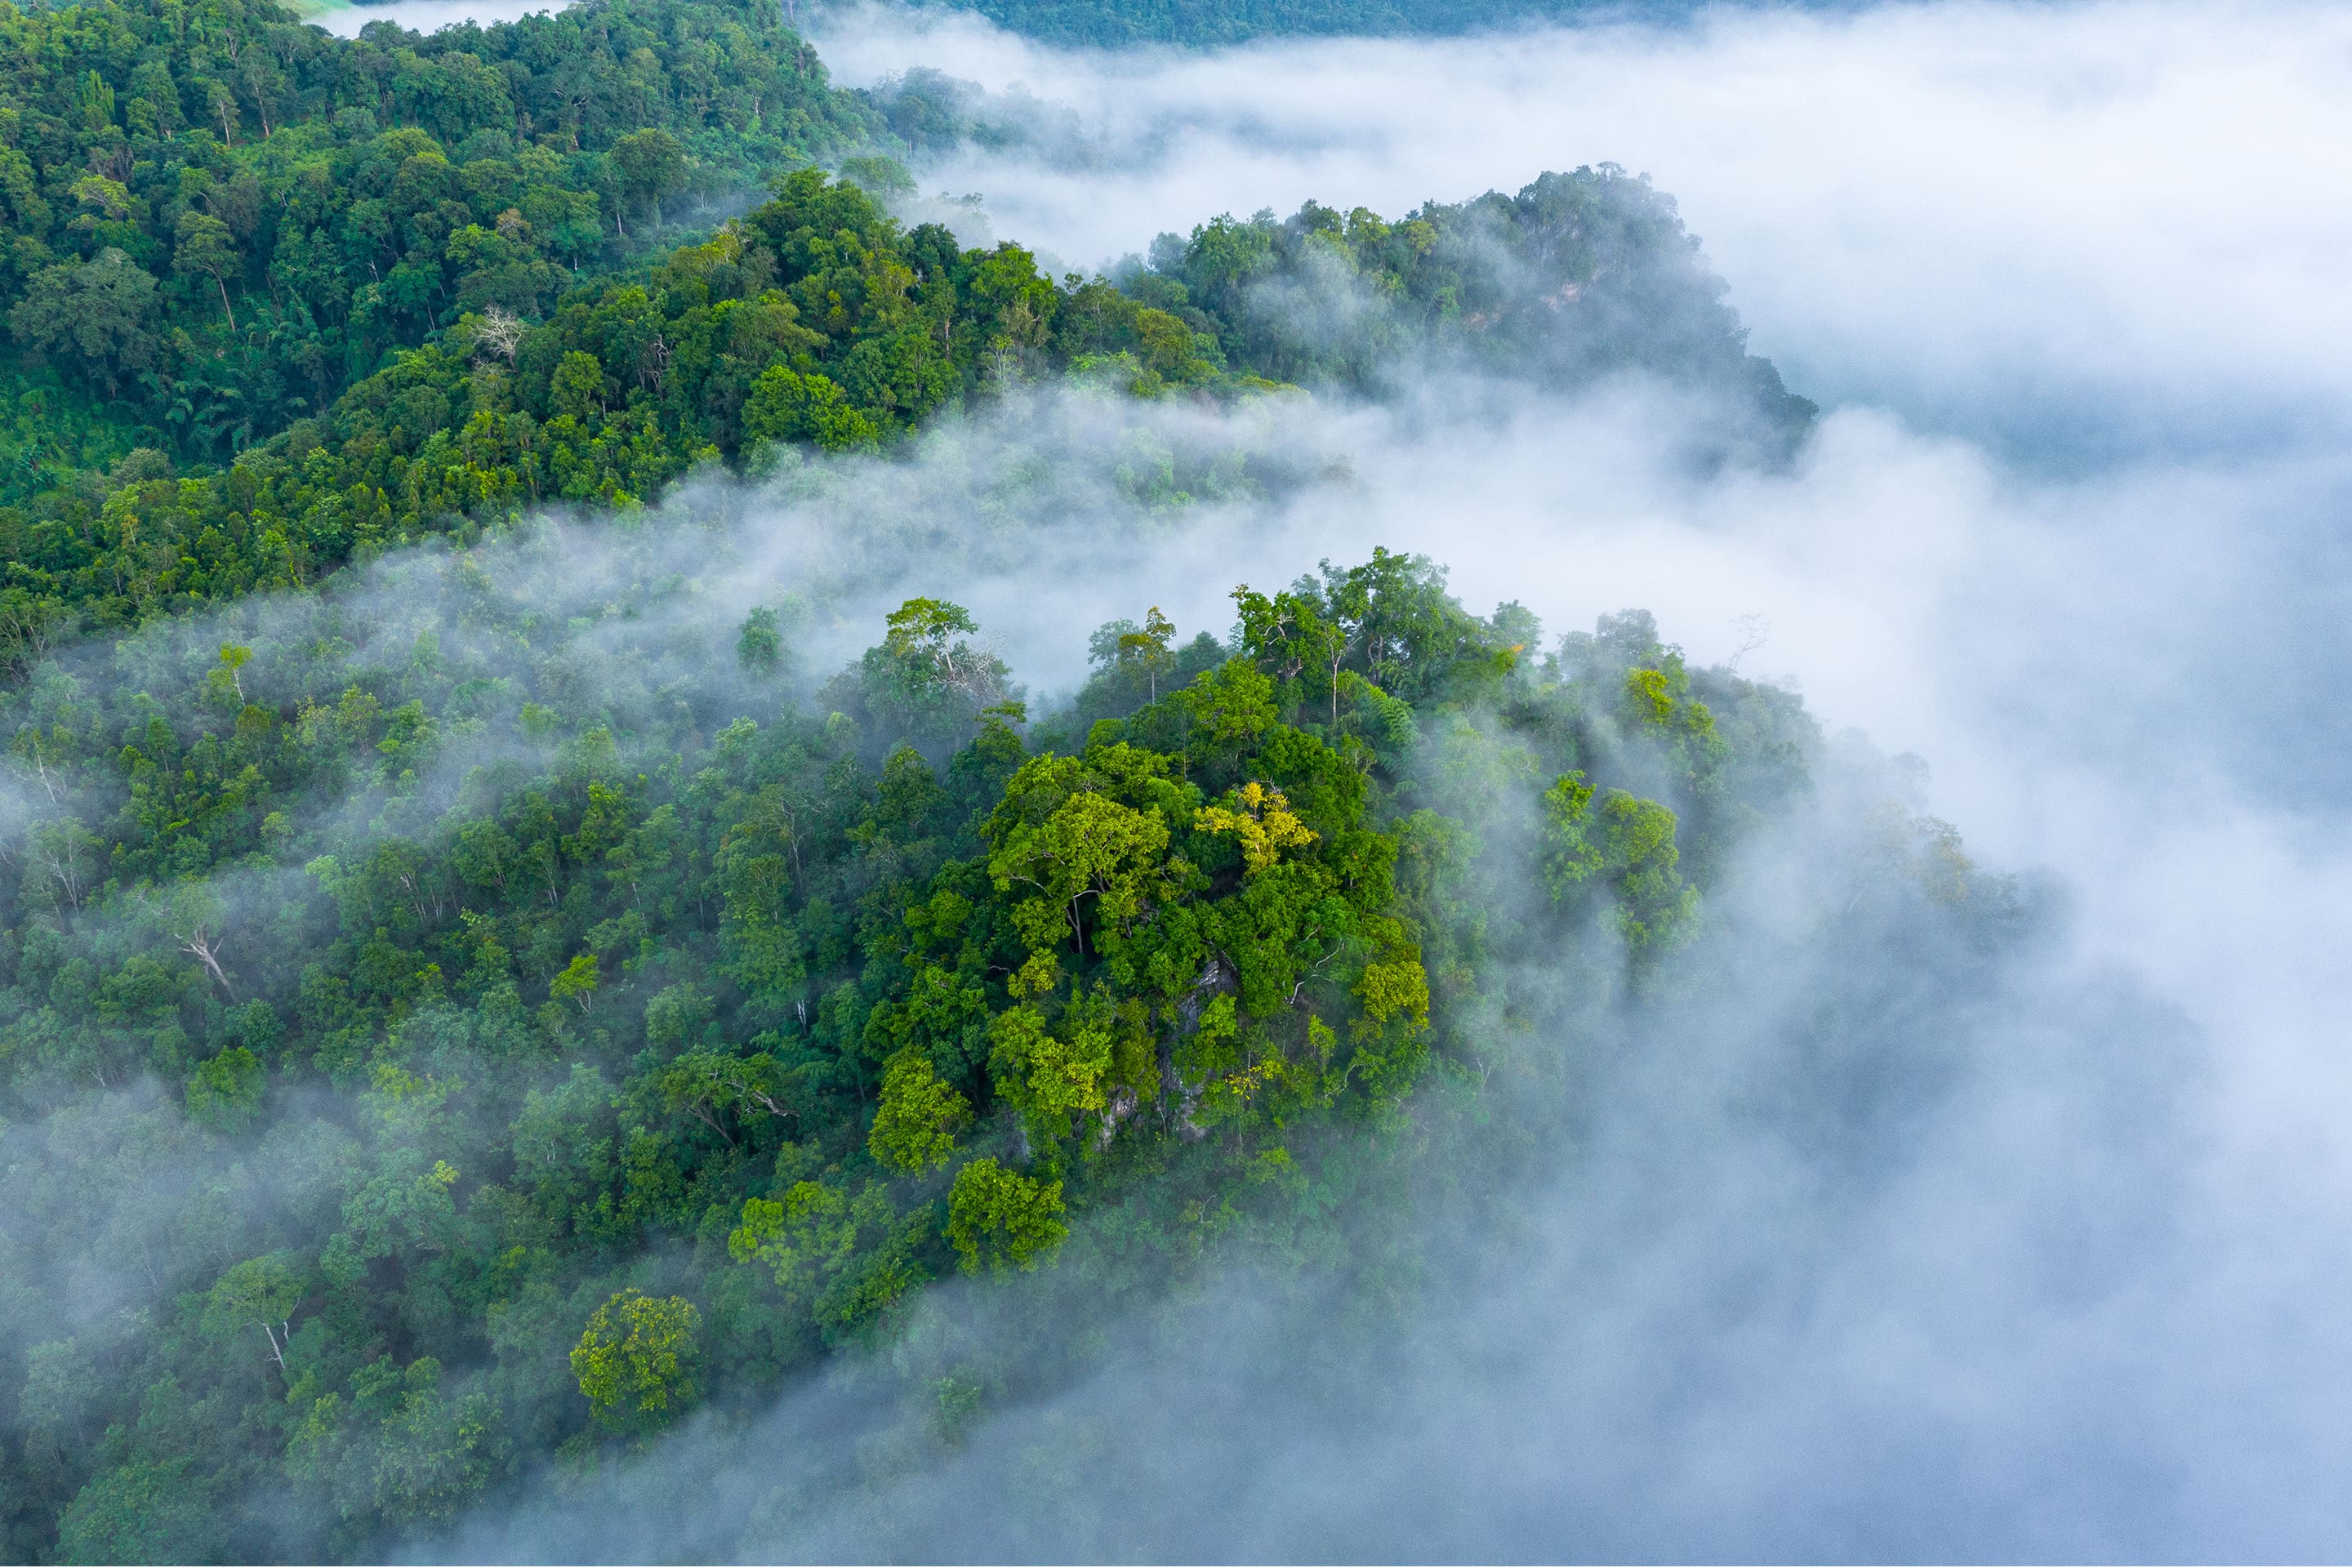 Vista aérea de uma floresta verdejante envolta em neblina branca.